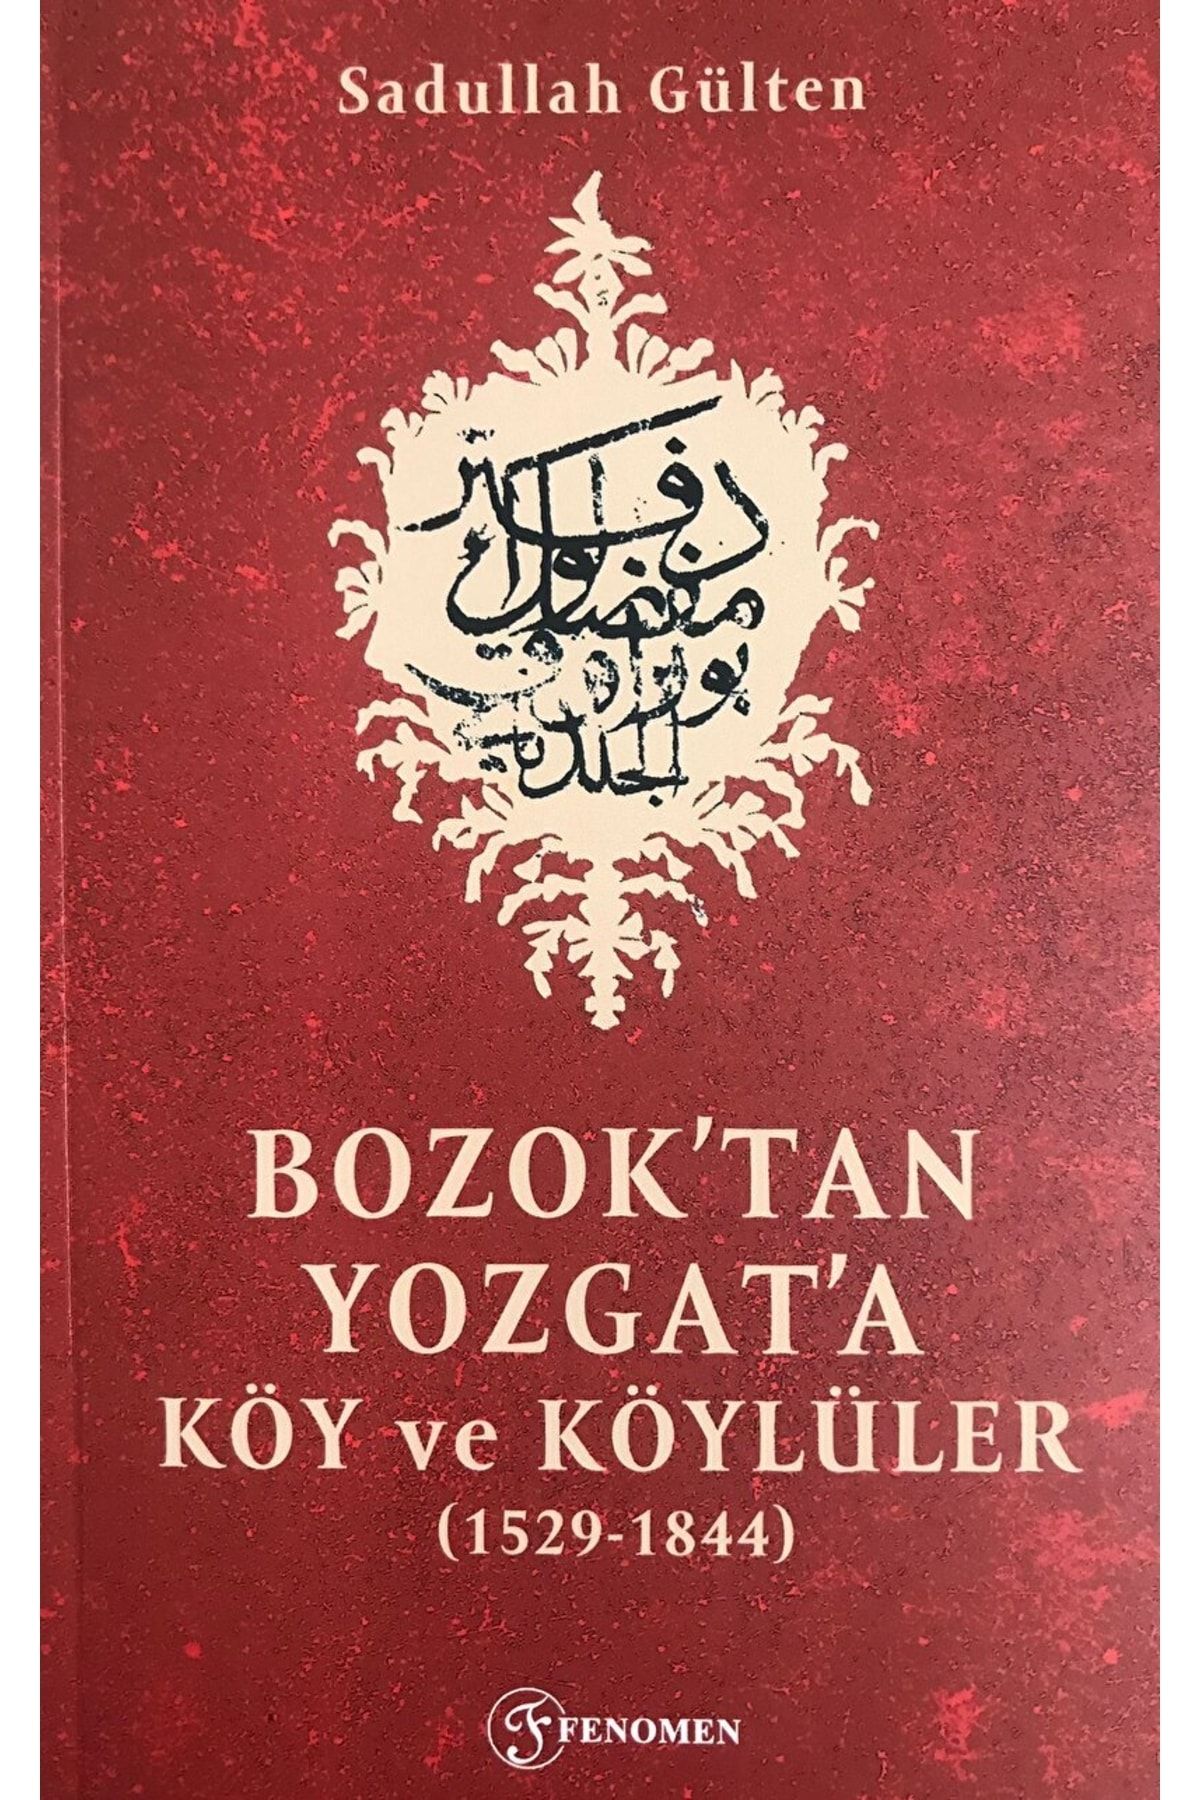 Fenomen Yayıncılık Bozok'tan Yozgat'a Köy Ve Köylüler / Sadullah Gülten / / 9786057223791